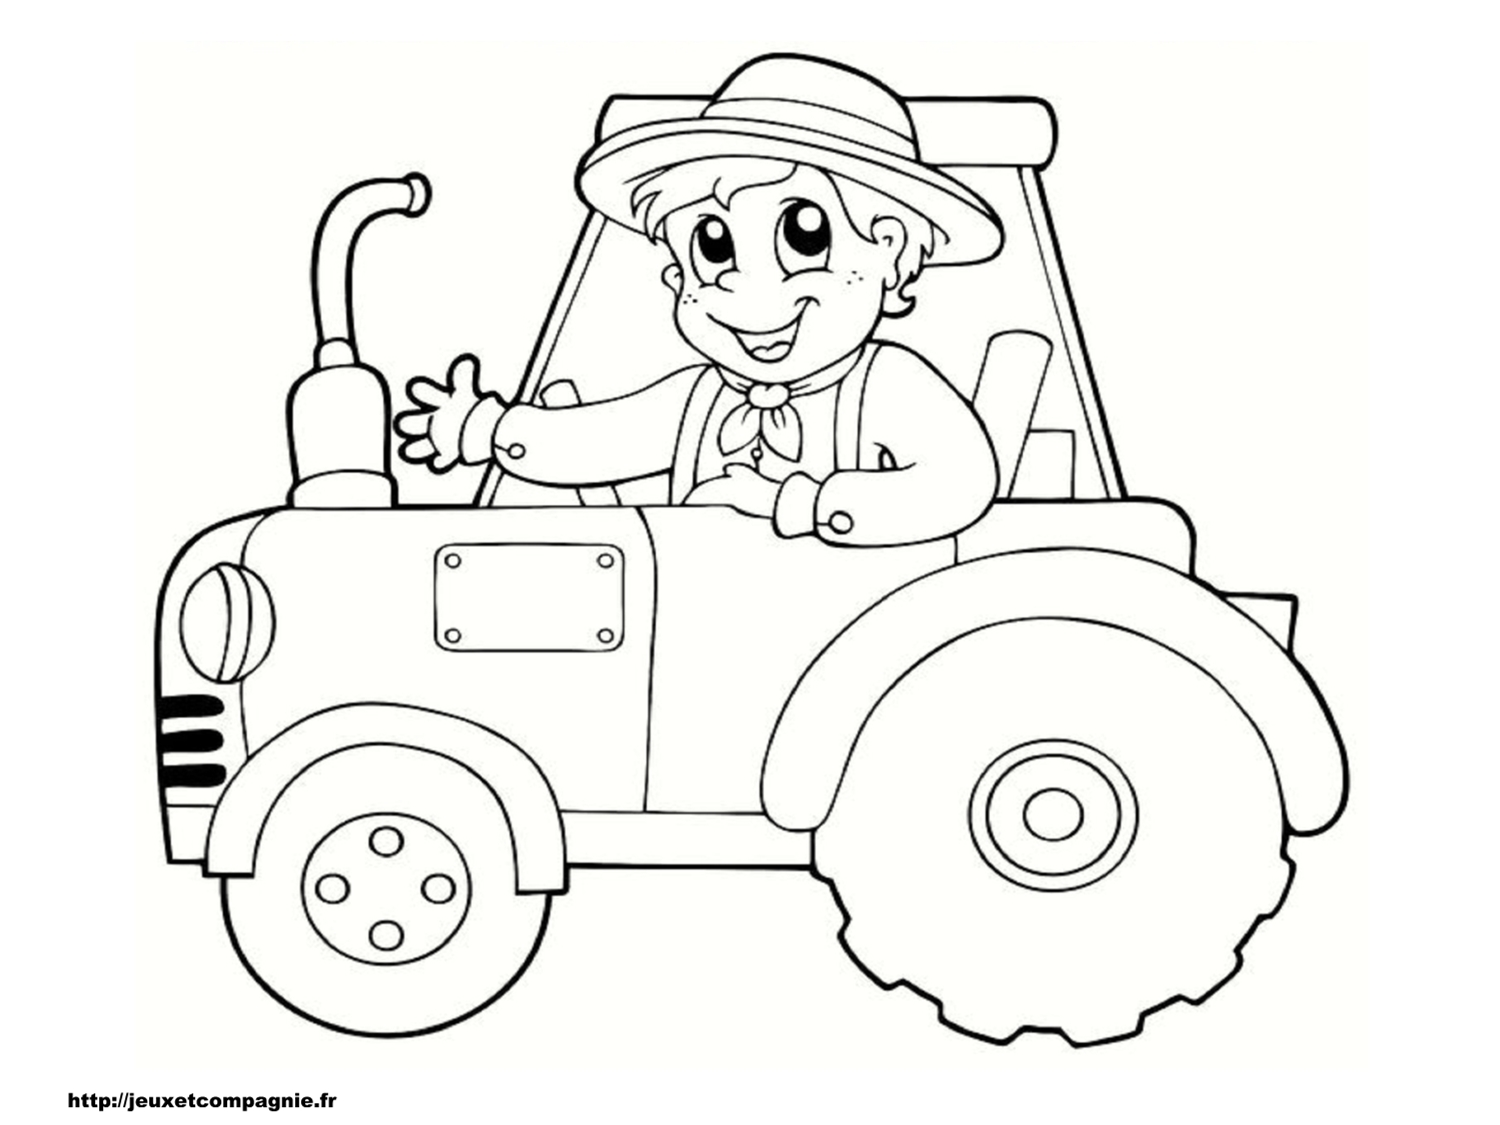 Image #18280 - Coloriage tracteur gratuit